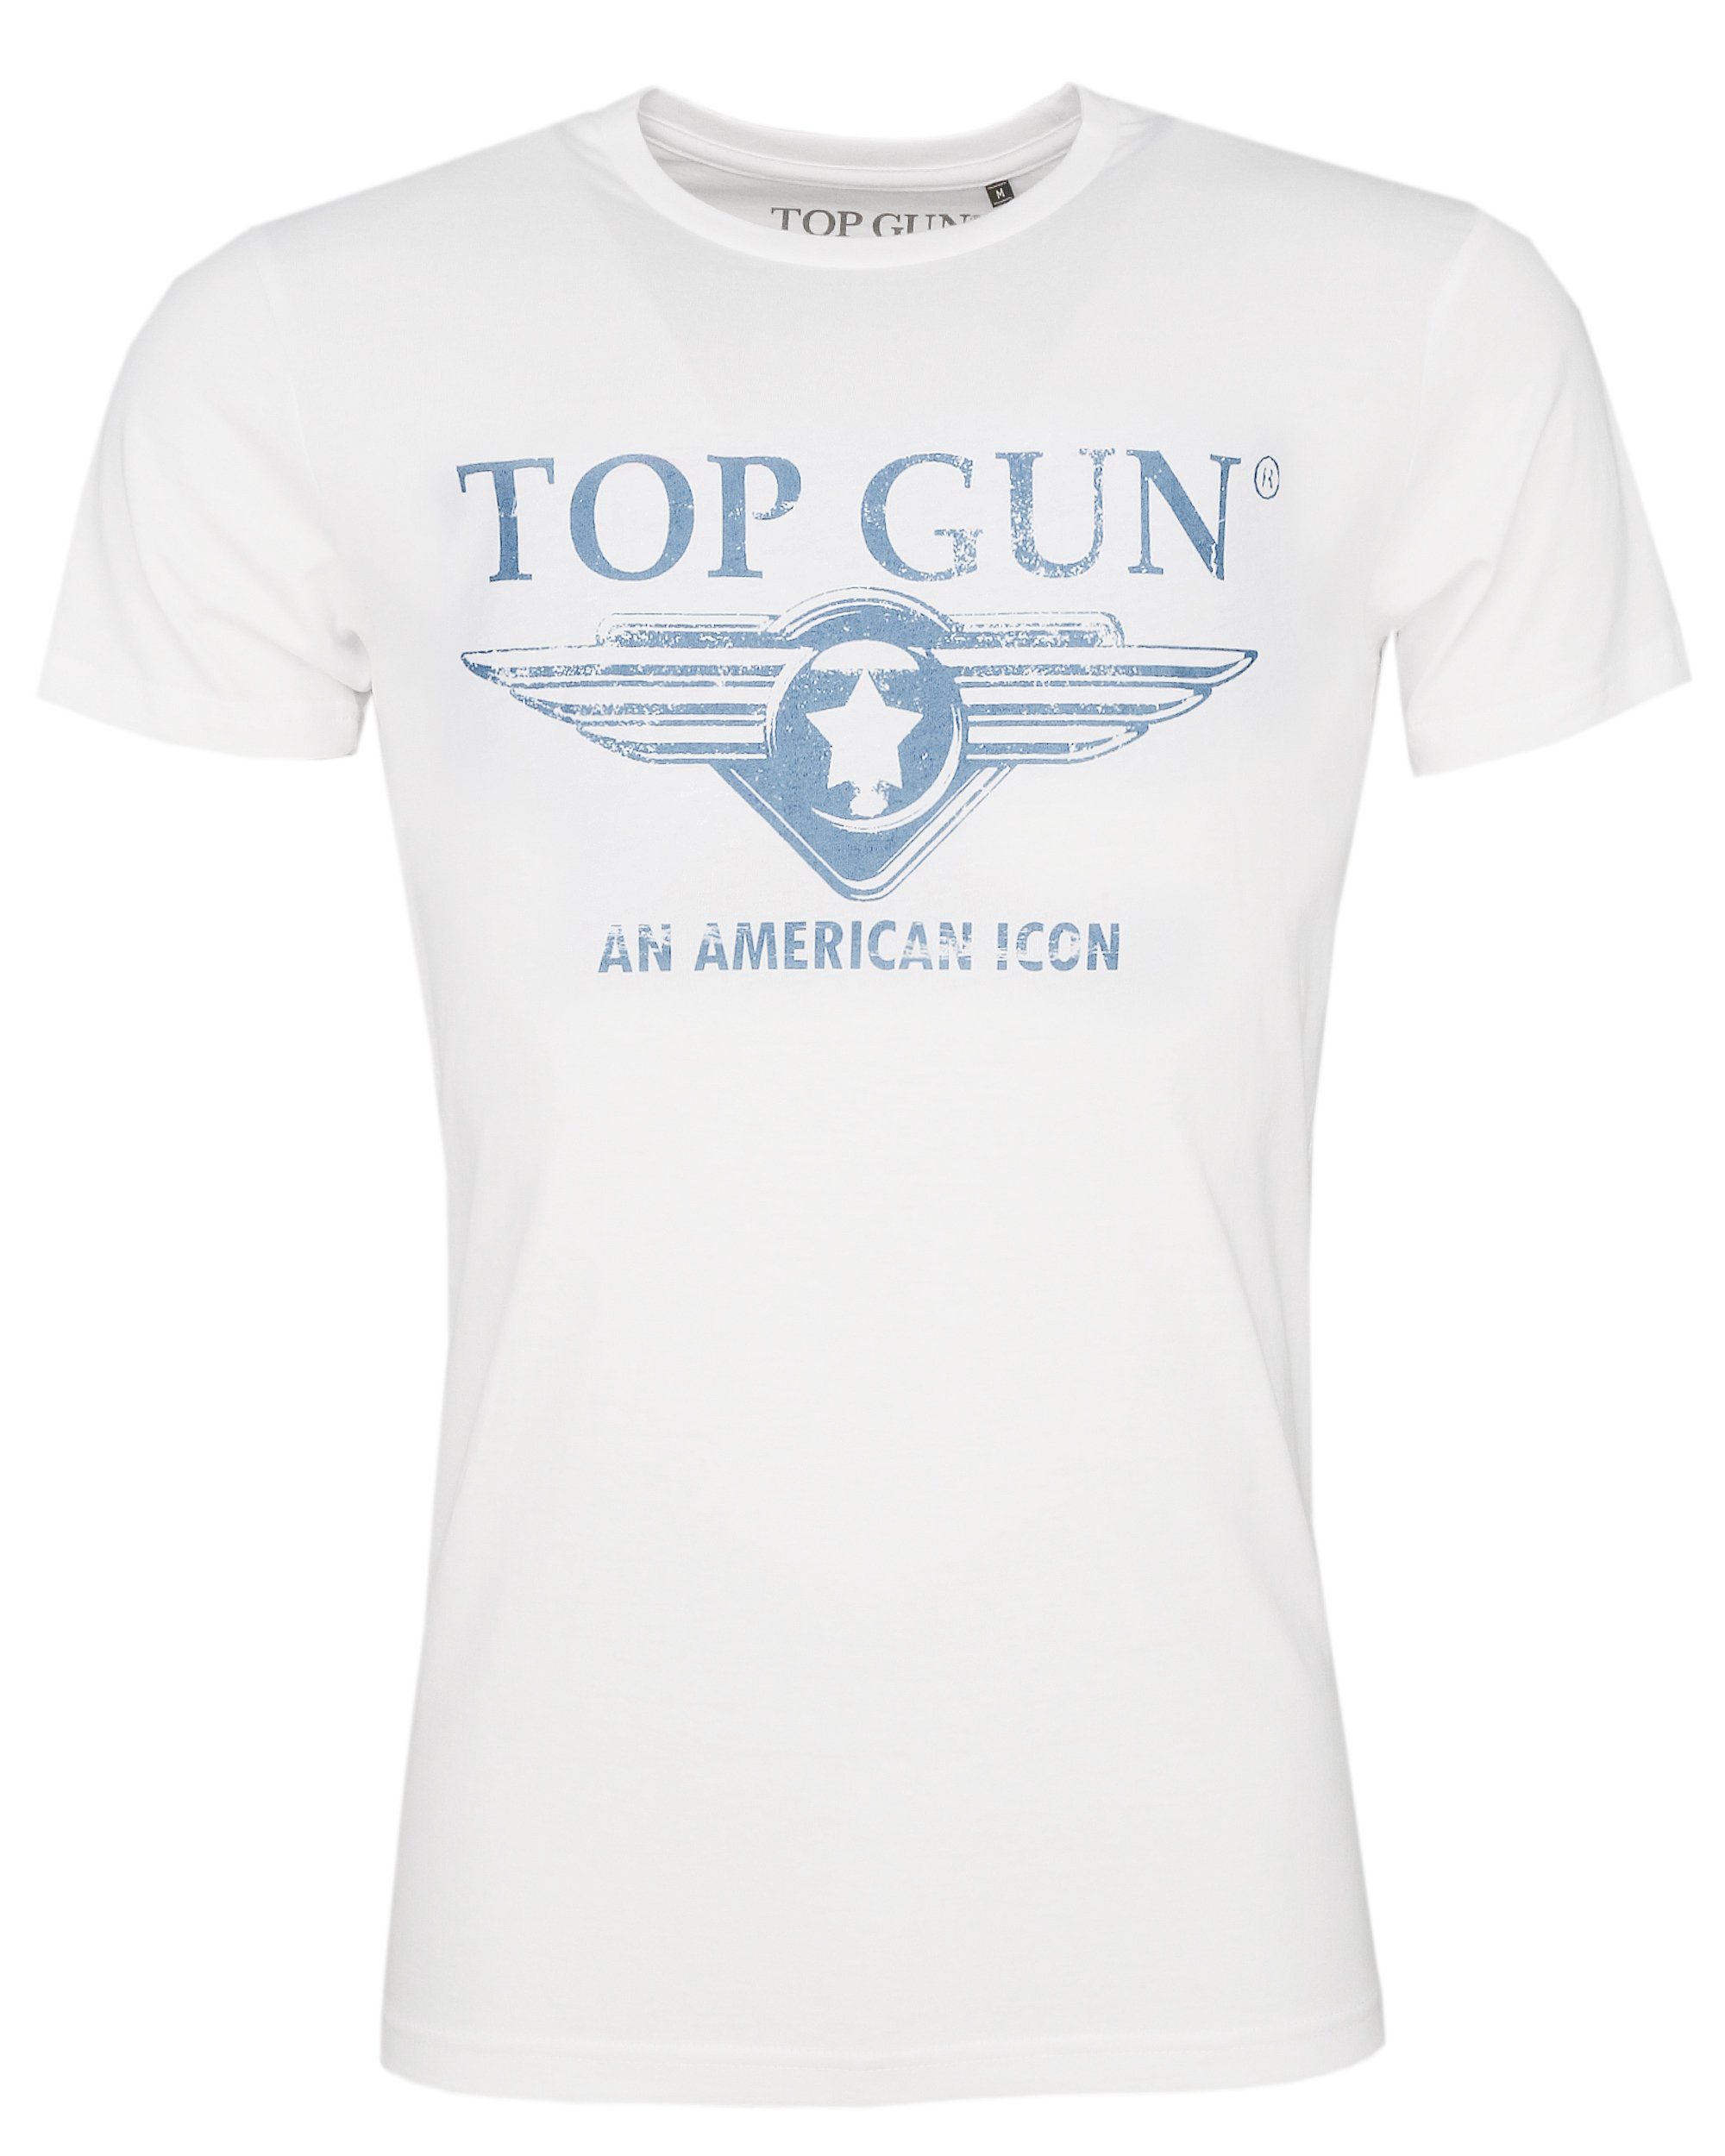 TOP GUN T-Shirt Beach TG20191071 royal